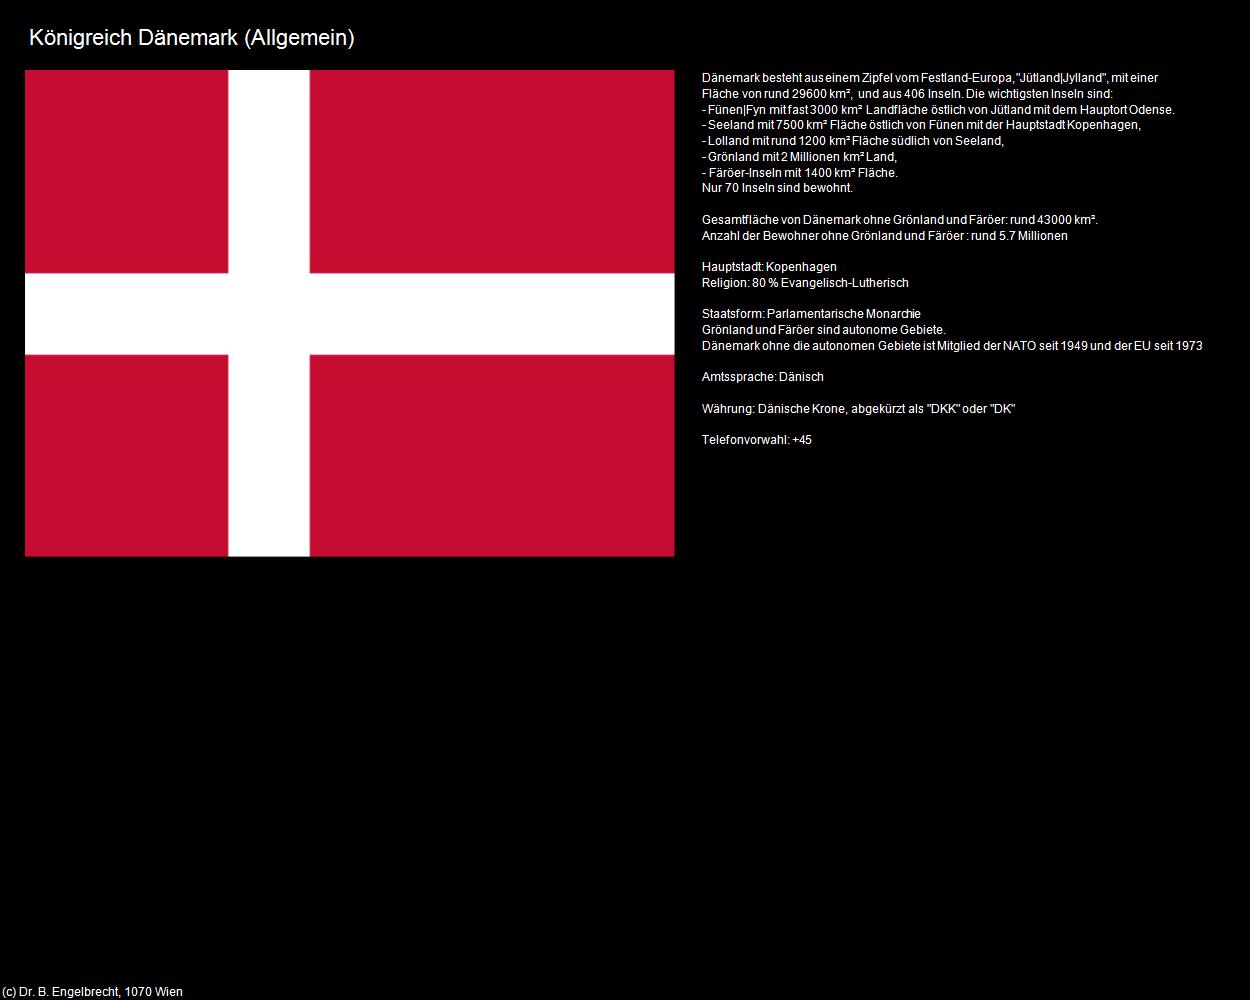 Königreich Dänemark (Allgemein) in Kulturatlas-REISE nach NORWEGEN